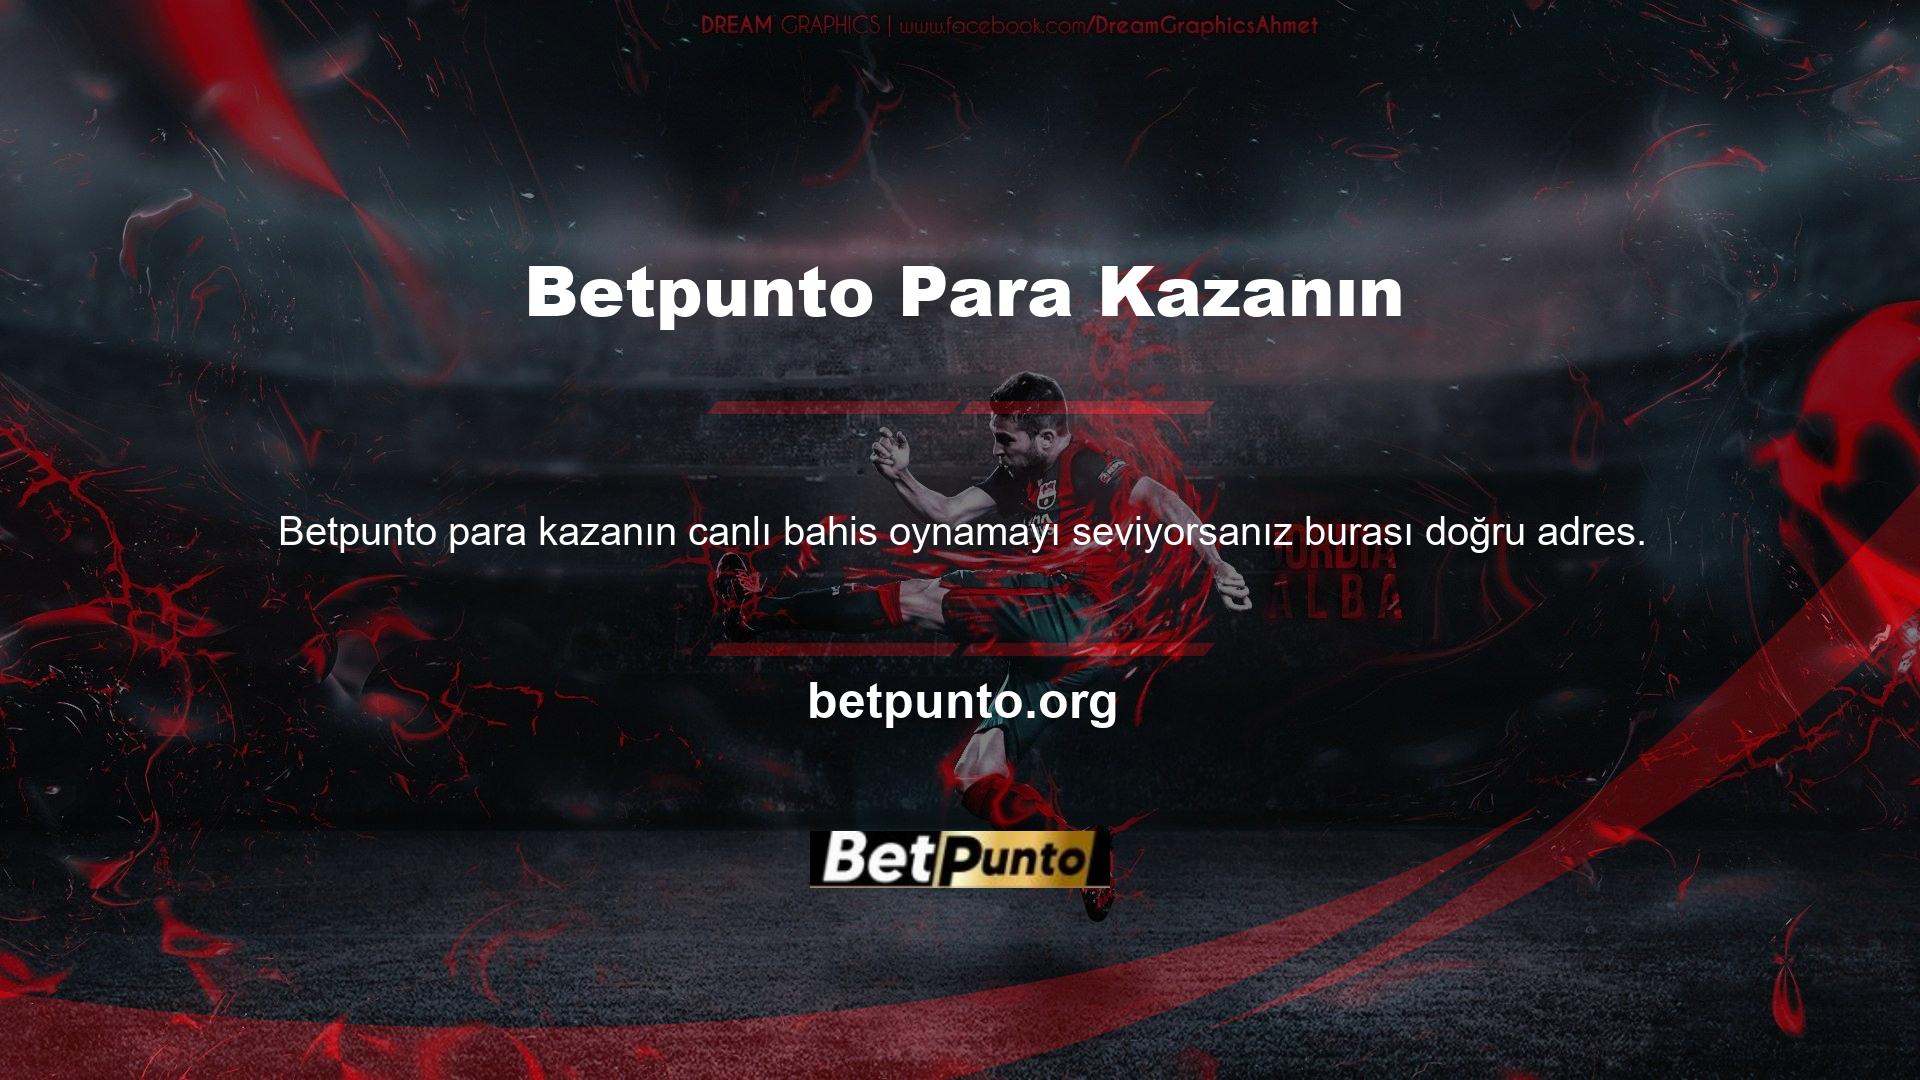 Betpunto para kazanmak için çok çeşitli canlı bahis seçenekleri mevcuttur